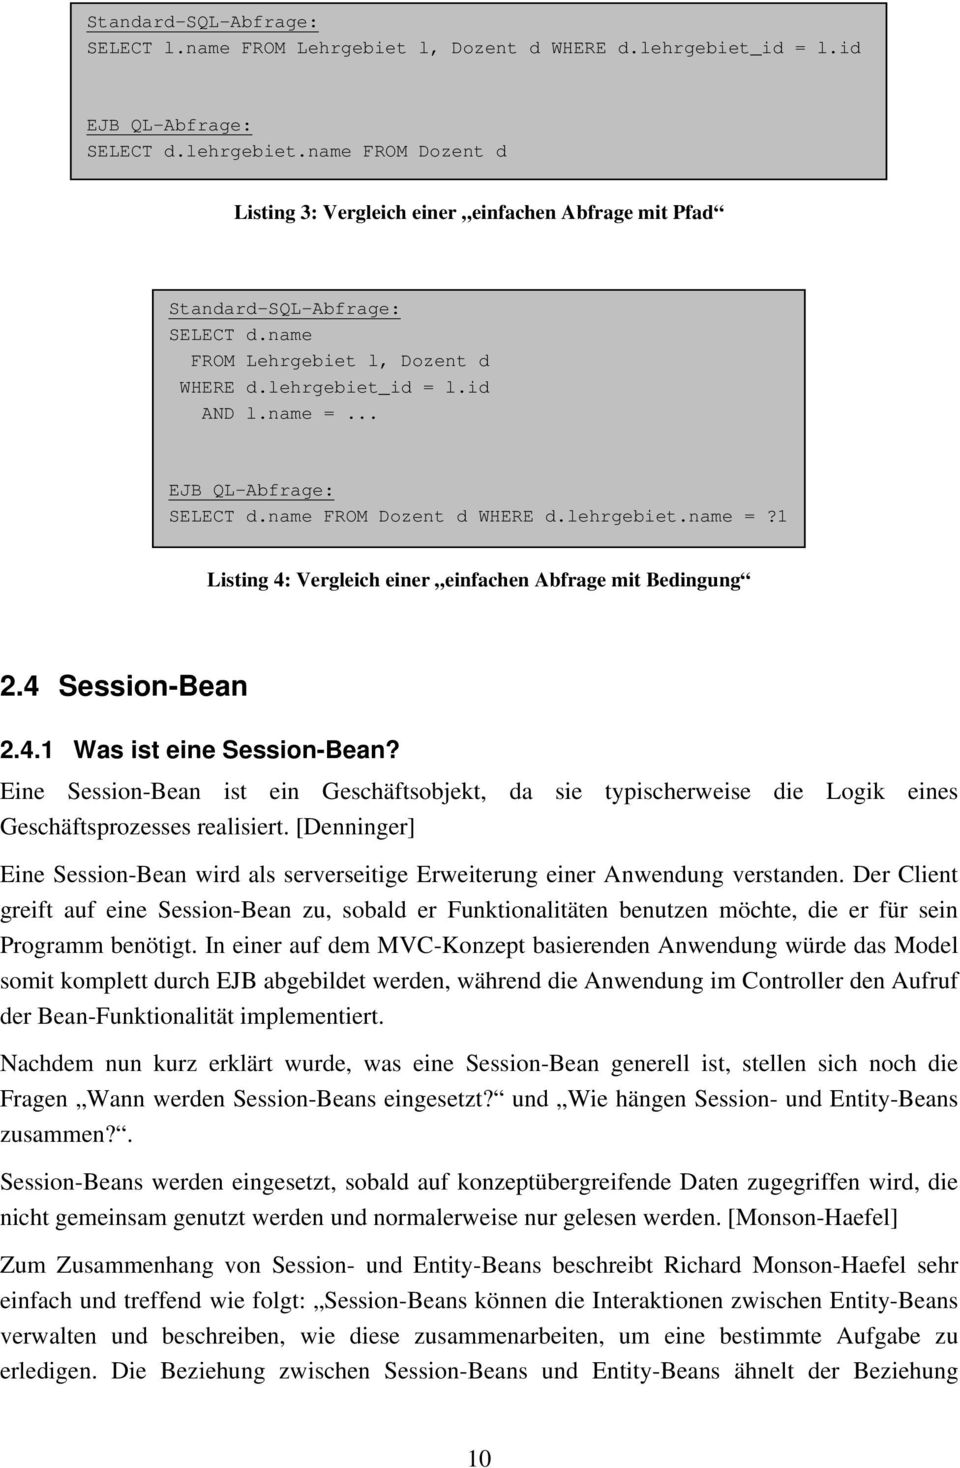 4 Session-Bean 2.4.1 Was ist eine Session-Bean? Eine Session-Bean ist ein Geschäftsobjekt, da sie typischerweise die Logik eines Geschäftsprozesses realisiert.